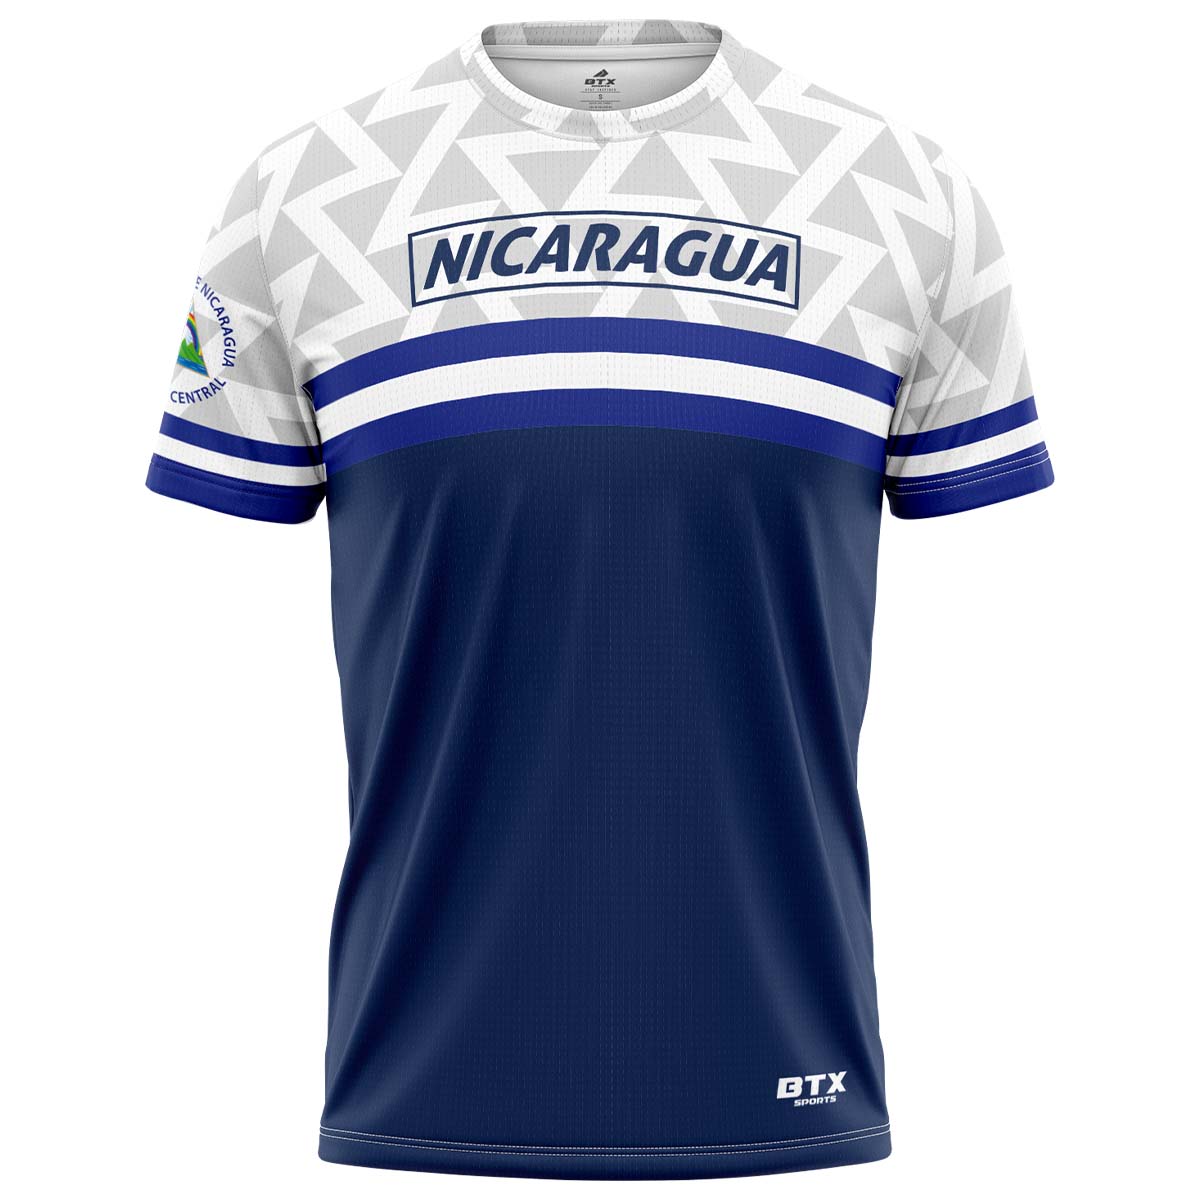 Camiseta Macarena blanco con azul de Nicaragua